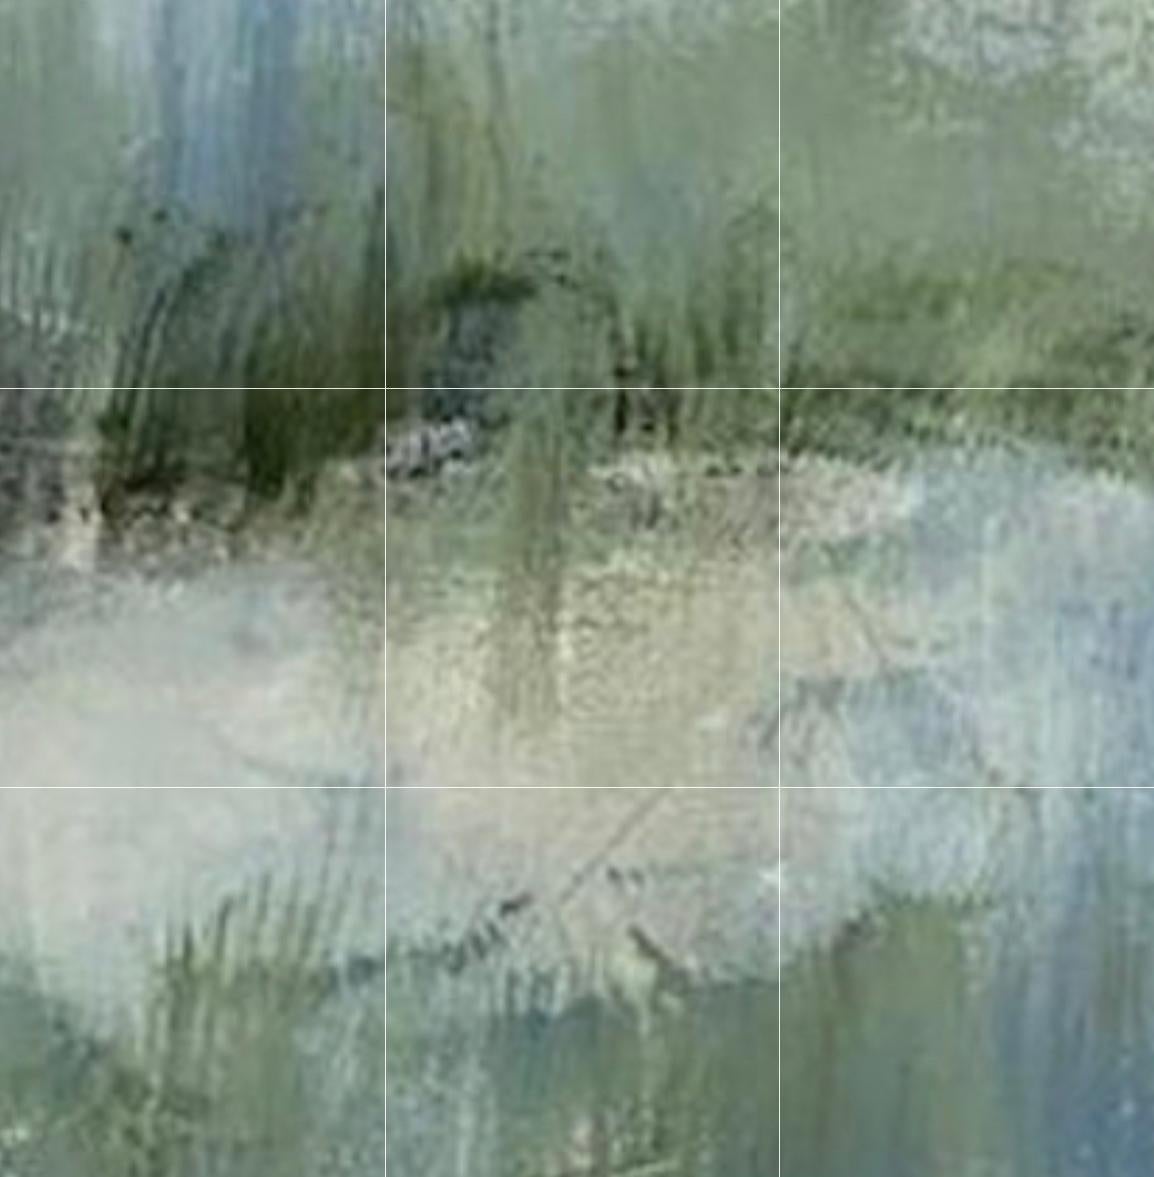 Der Sumpf birgt Geheimnisse, wie auch dieses Sumpfbild.  Es ist eine Mischung aus abstrakter Malerei und Impressionismus mit einem zeitgenössischen Flair.